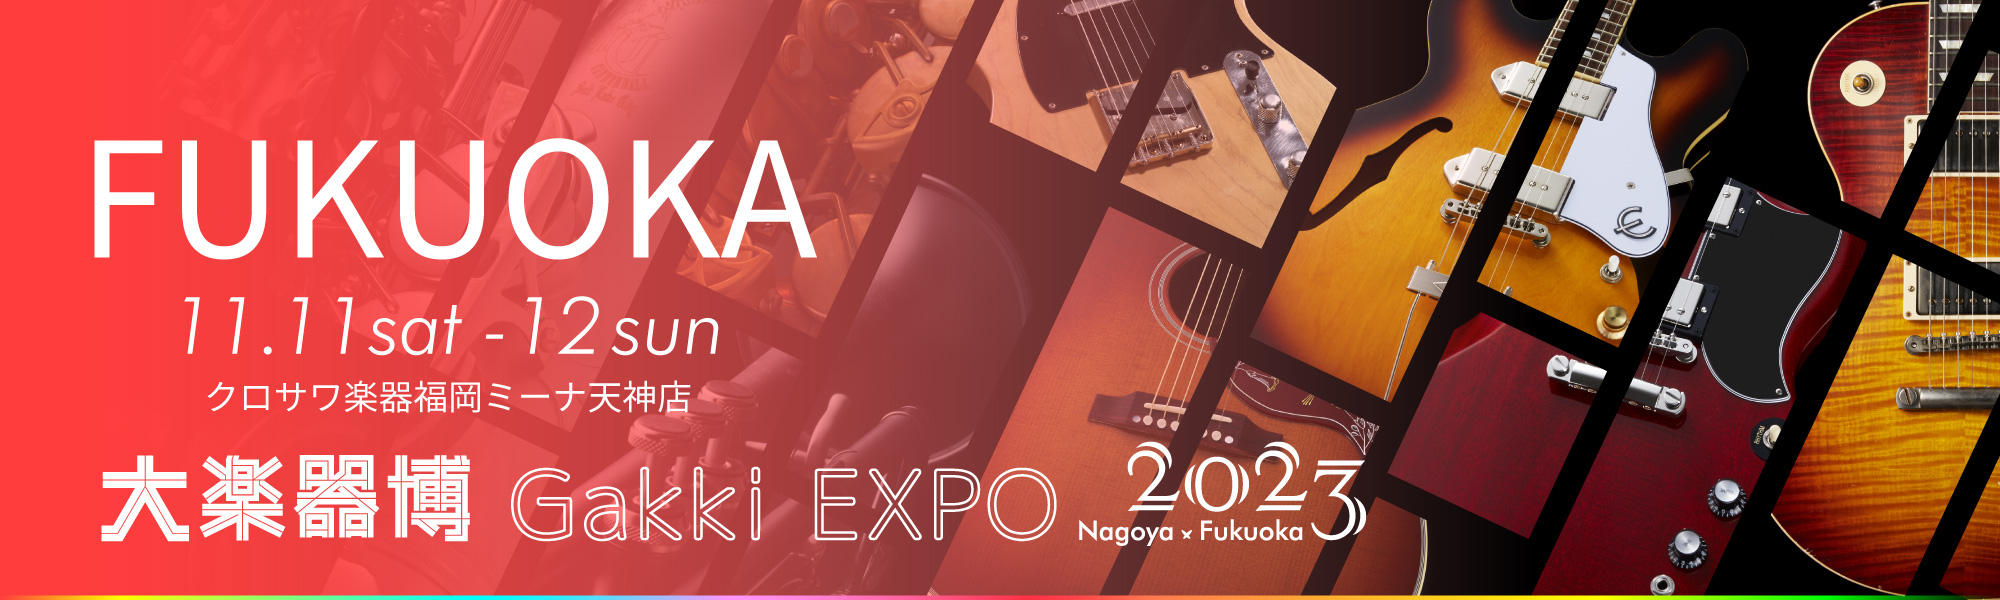 クロサワ楽器店 大楽器博2023 -Gakki EXPO’2023-